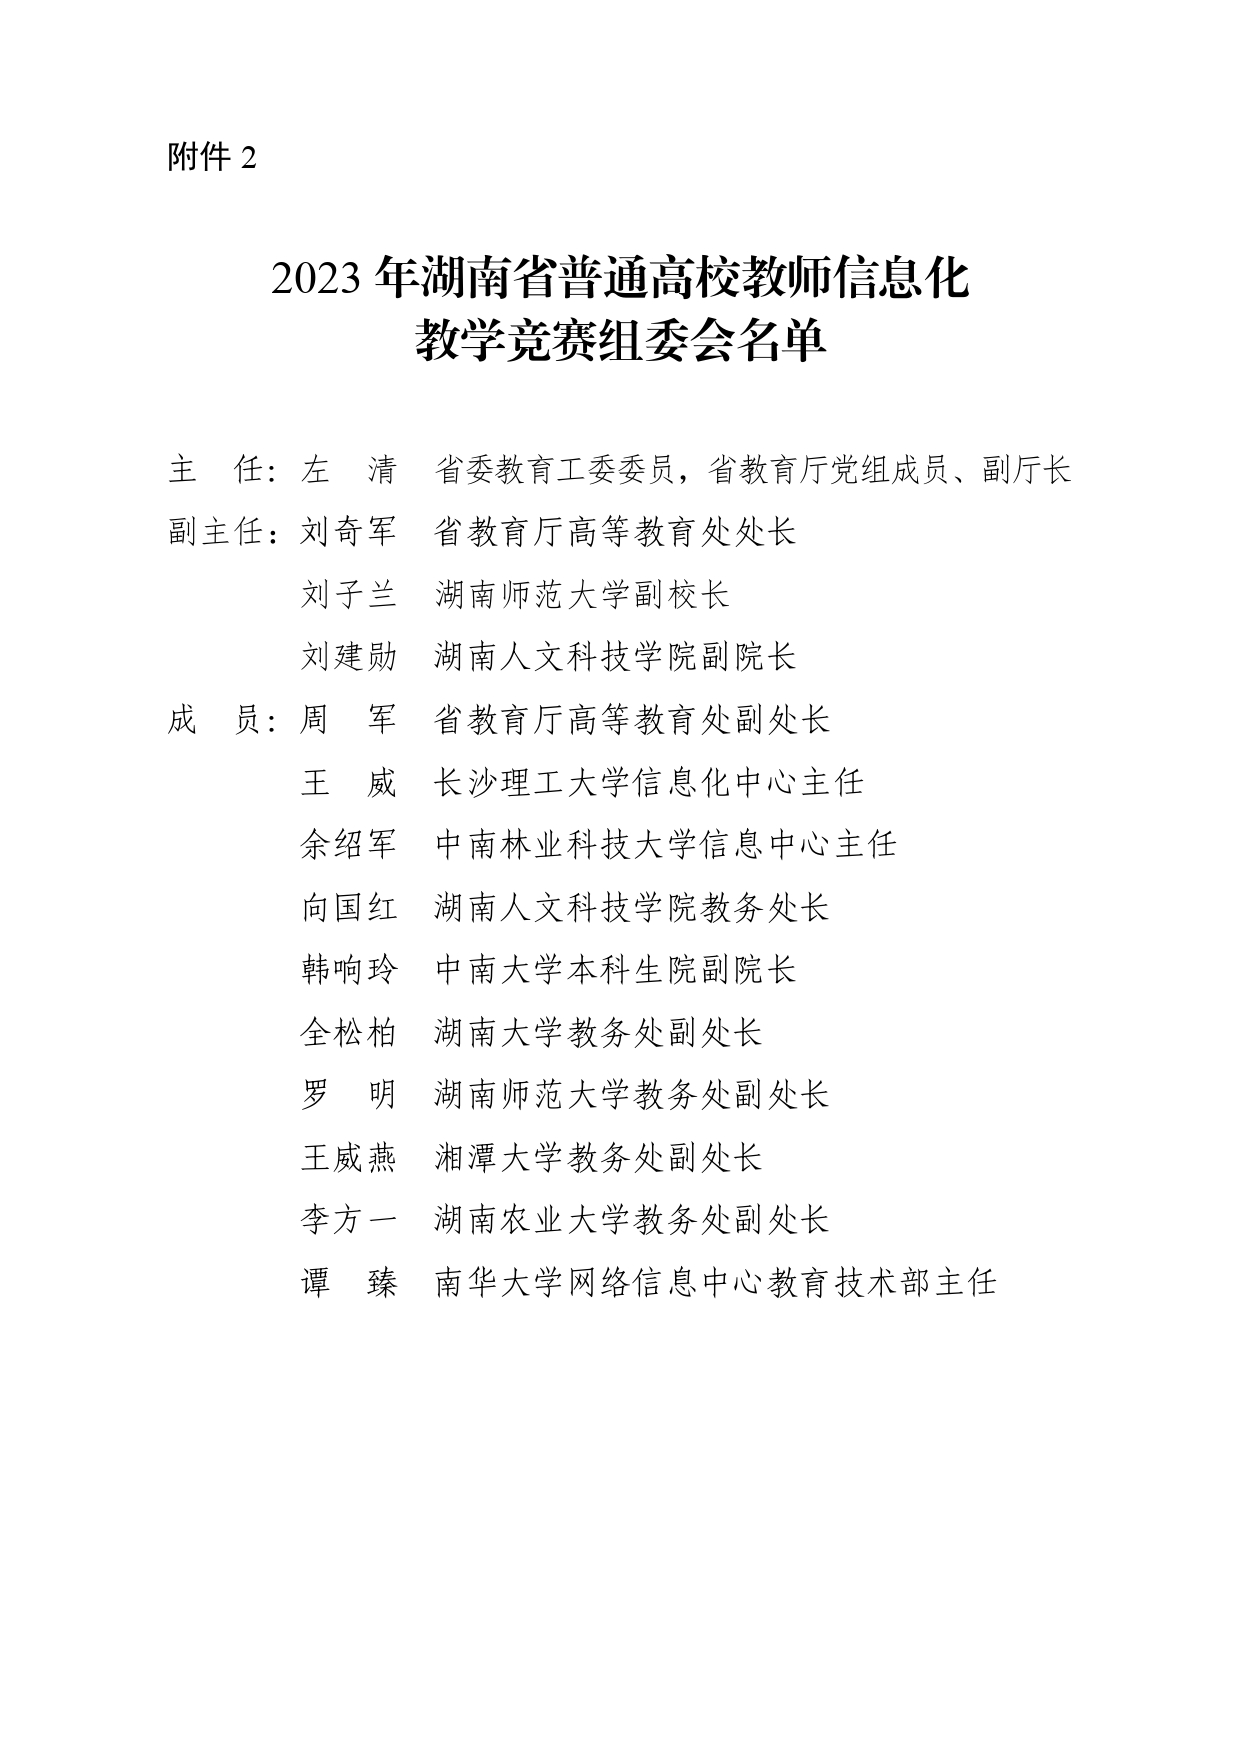 2023年专委会竞赛文件_page-0009.jpg